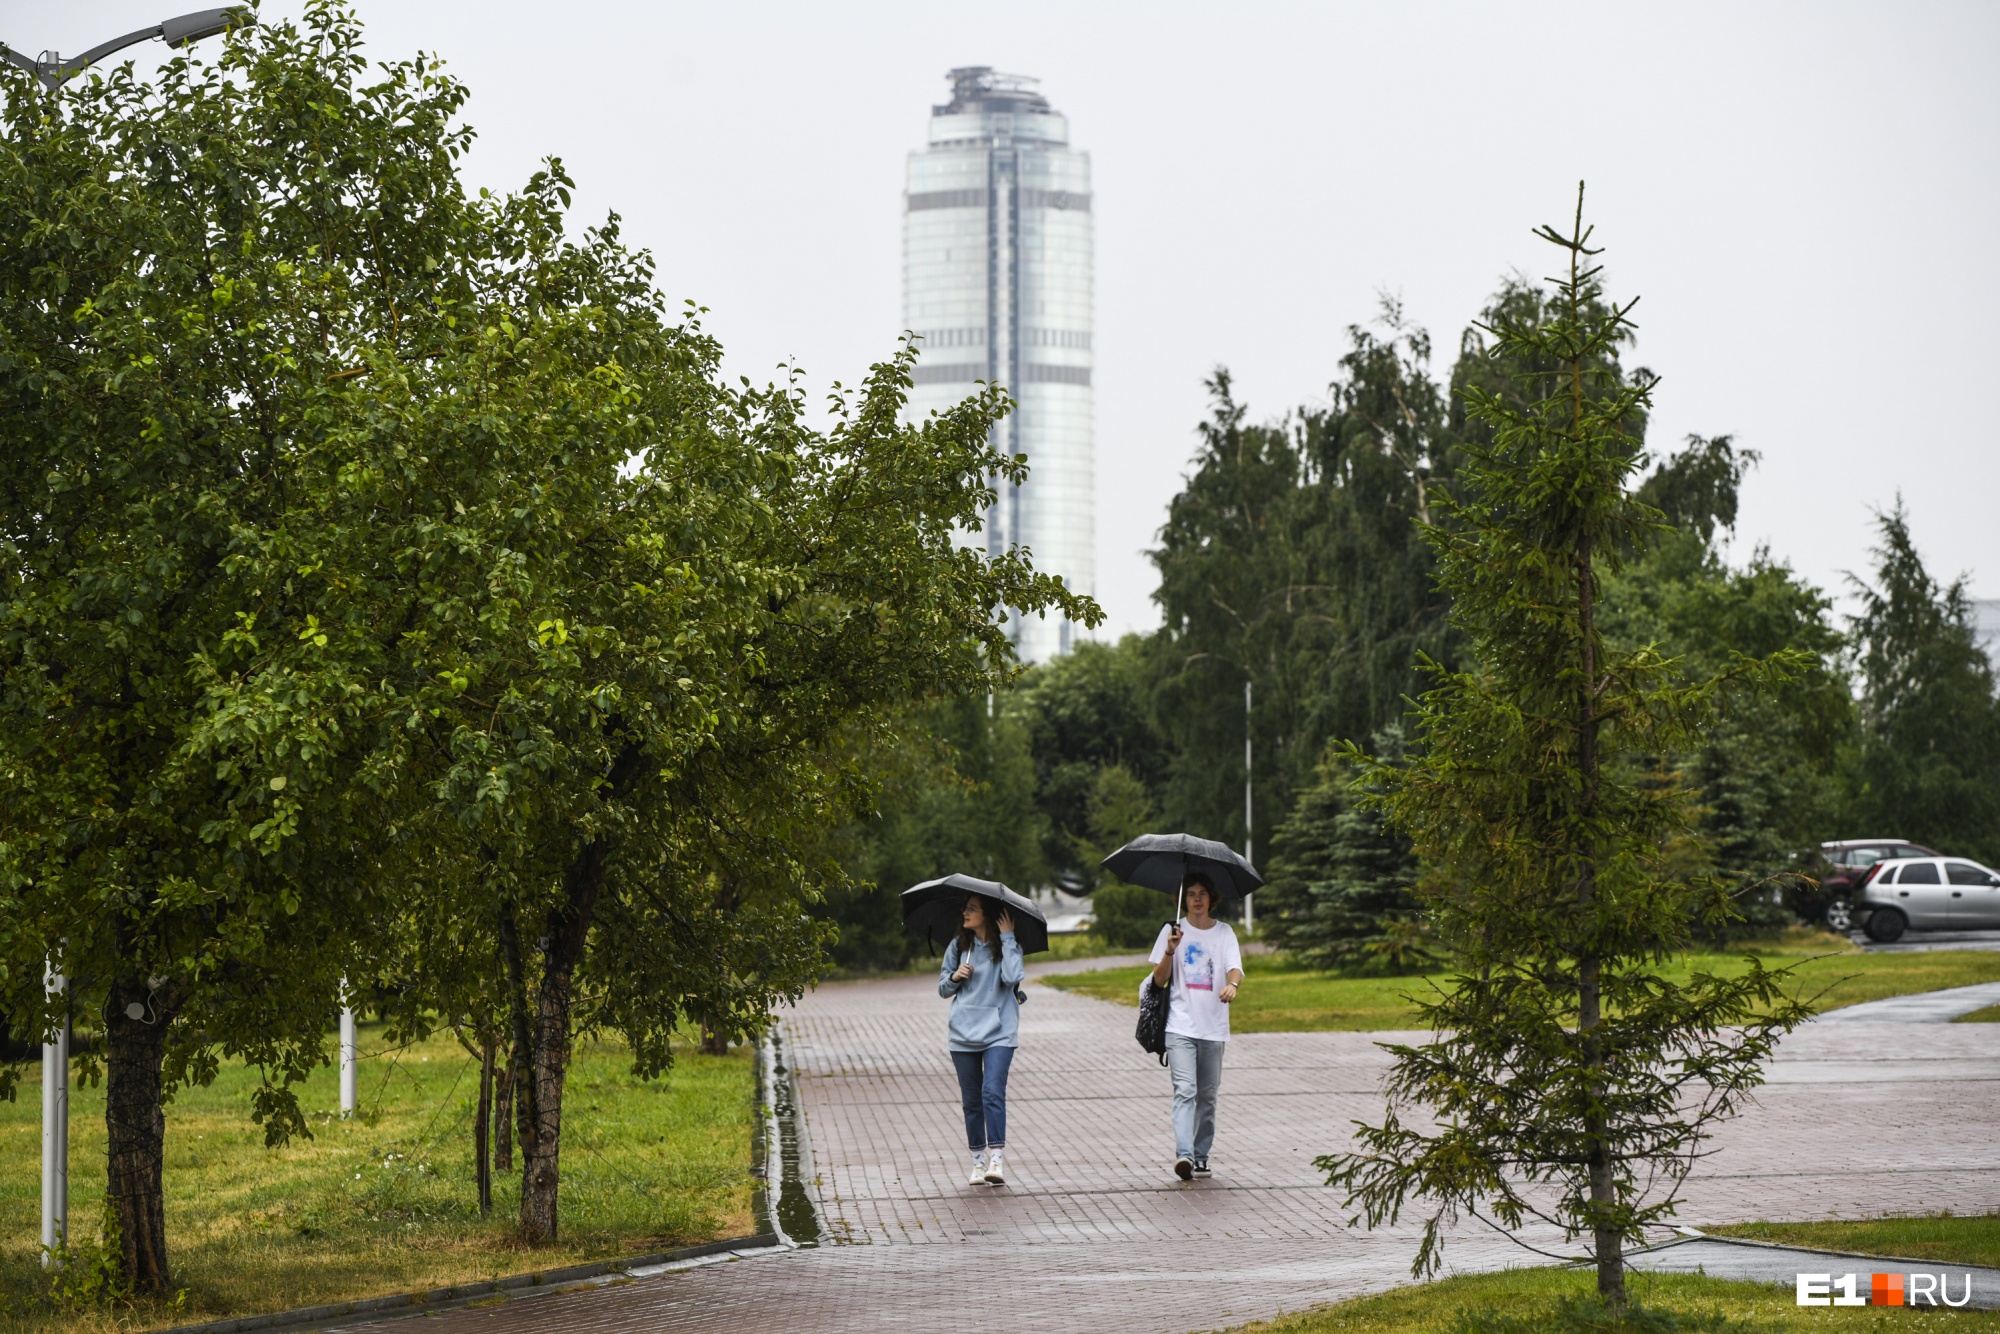 Екатеринбуржцы знают, что погода на Урале переменчива, поэтому всегда носят с собой зонты